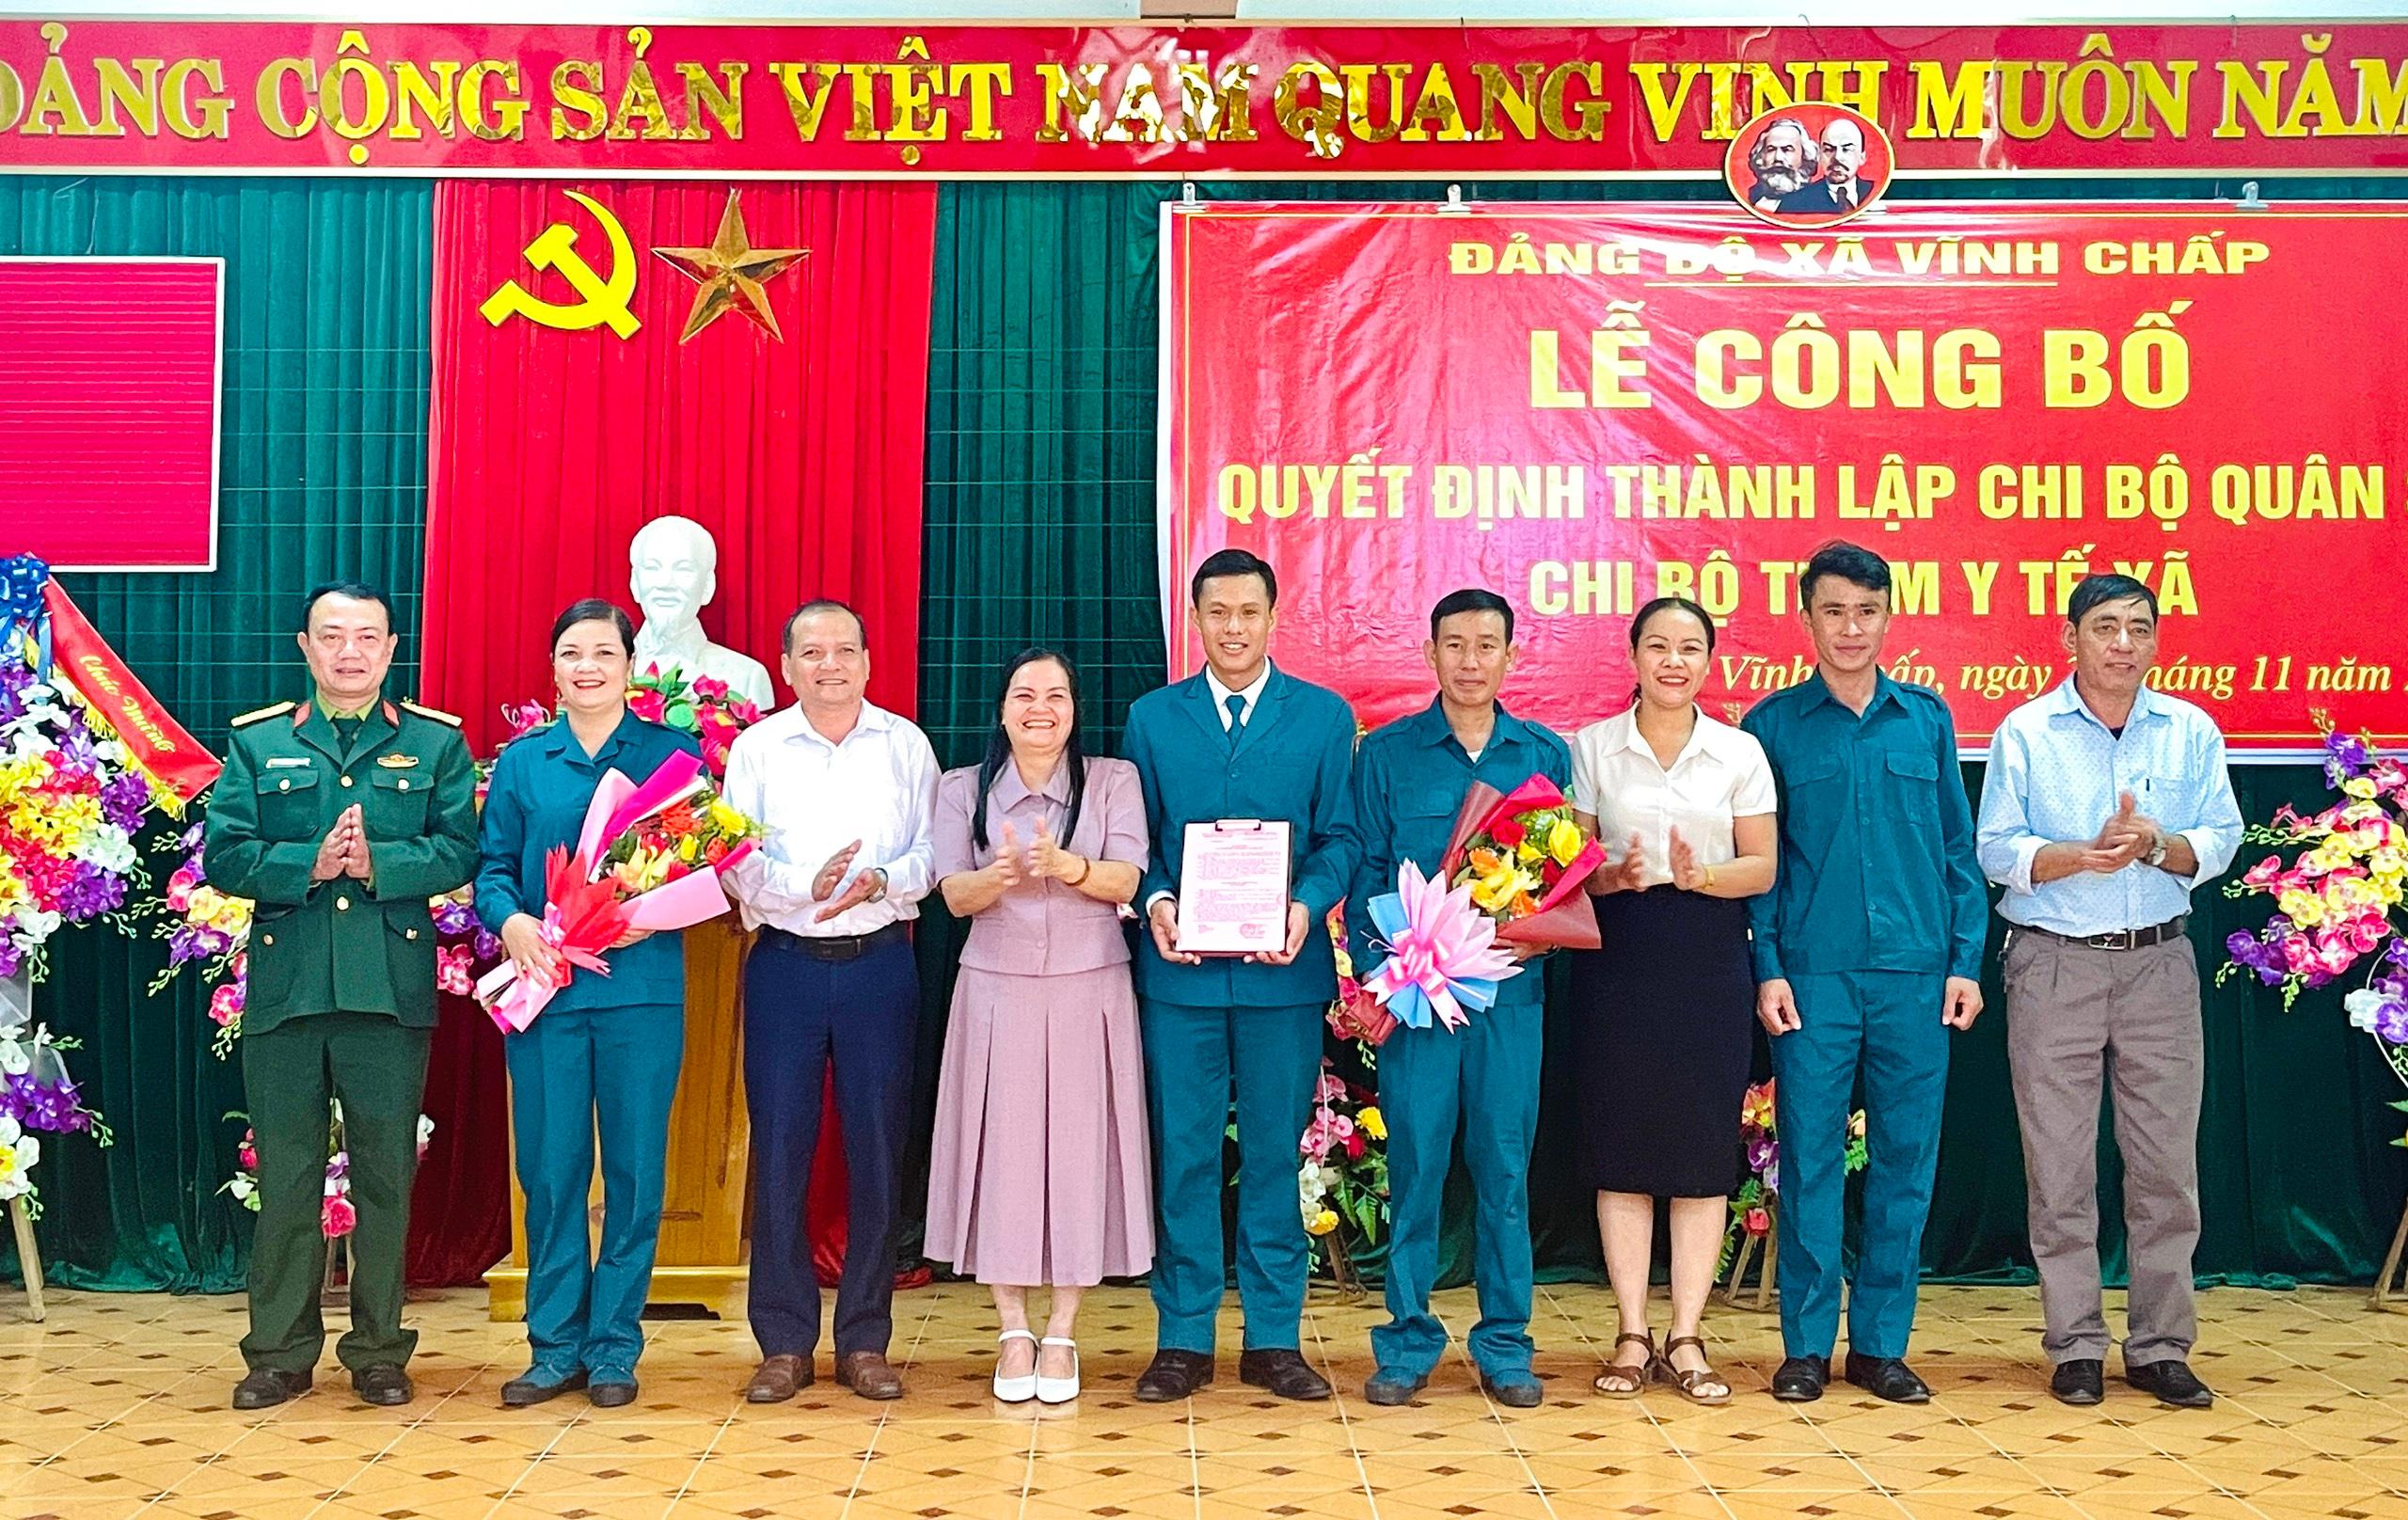 Đảng bộ xã Vĩnh Chấp tổ chức lễ công bố quyết định thành lập Chi bộ Quân sự, Chi bộ Trạm y tế xã